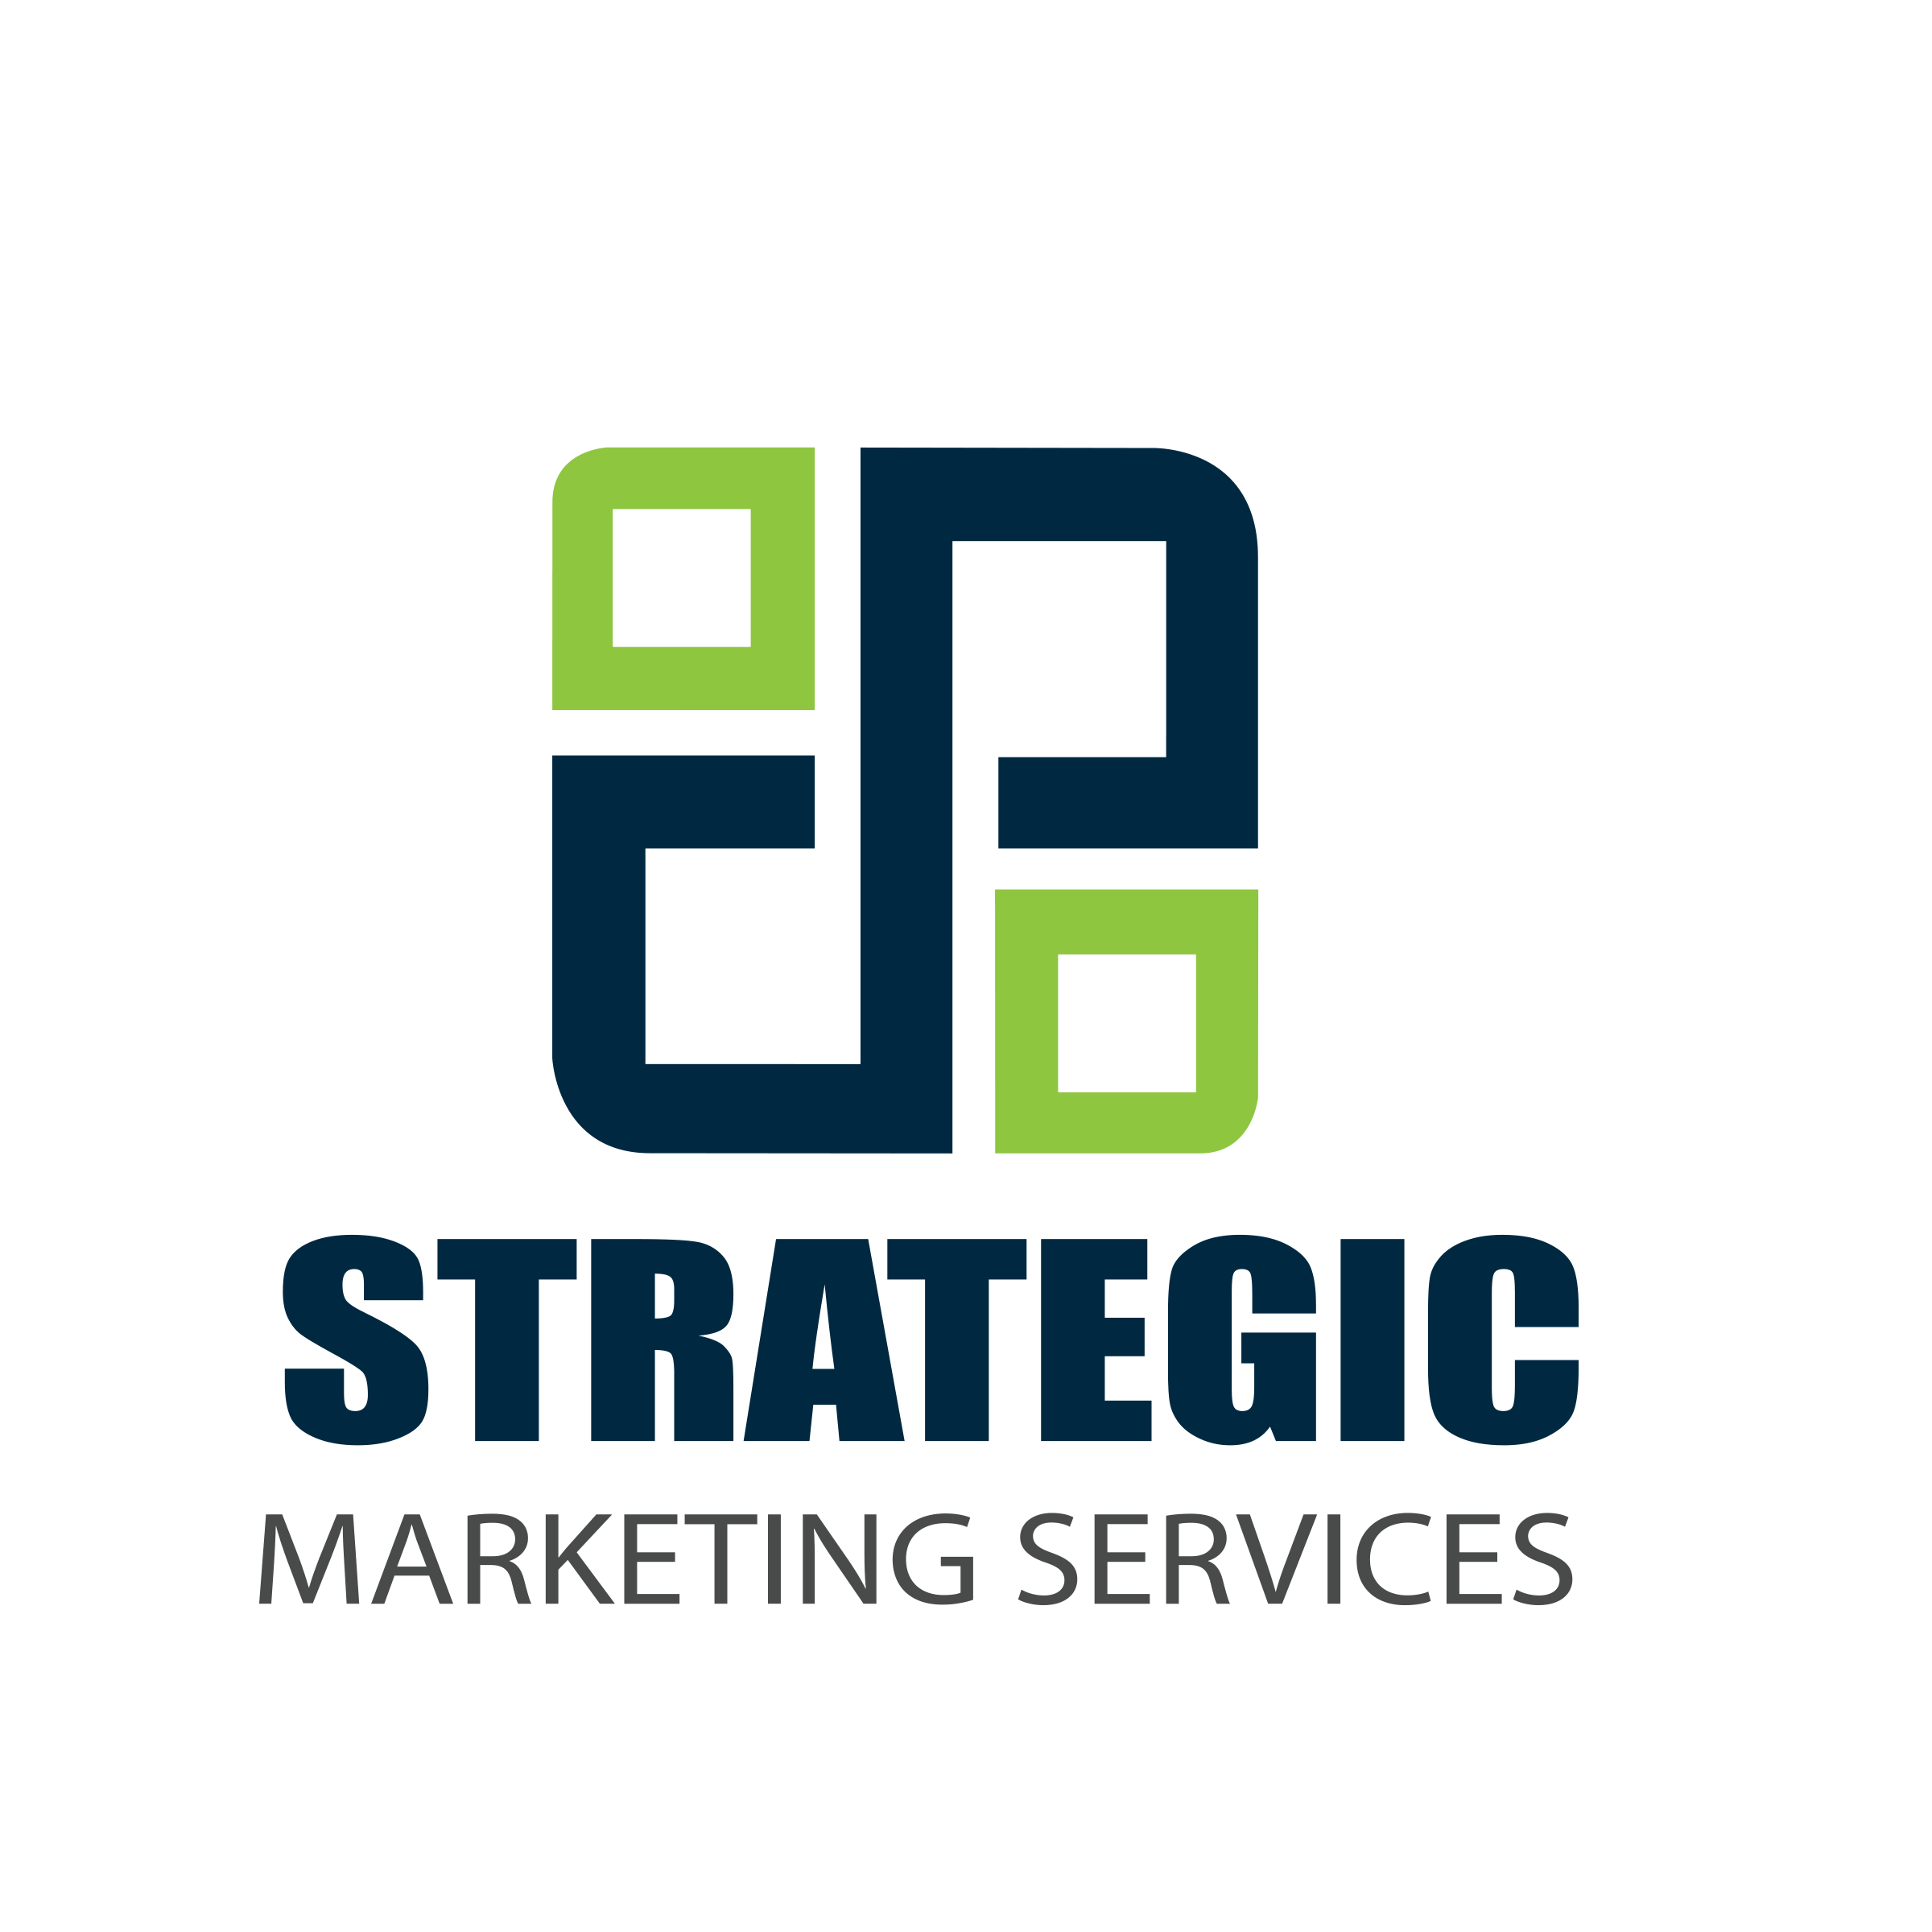 Strategic Logo - Strategic Marketing Services Logo (stackedl Logo) Gif